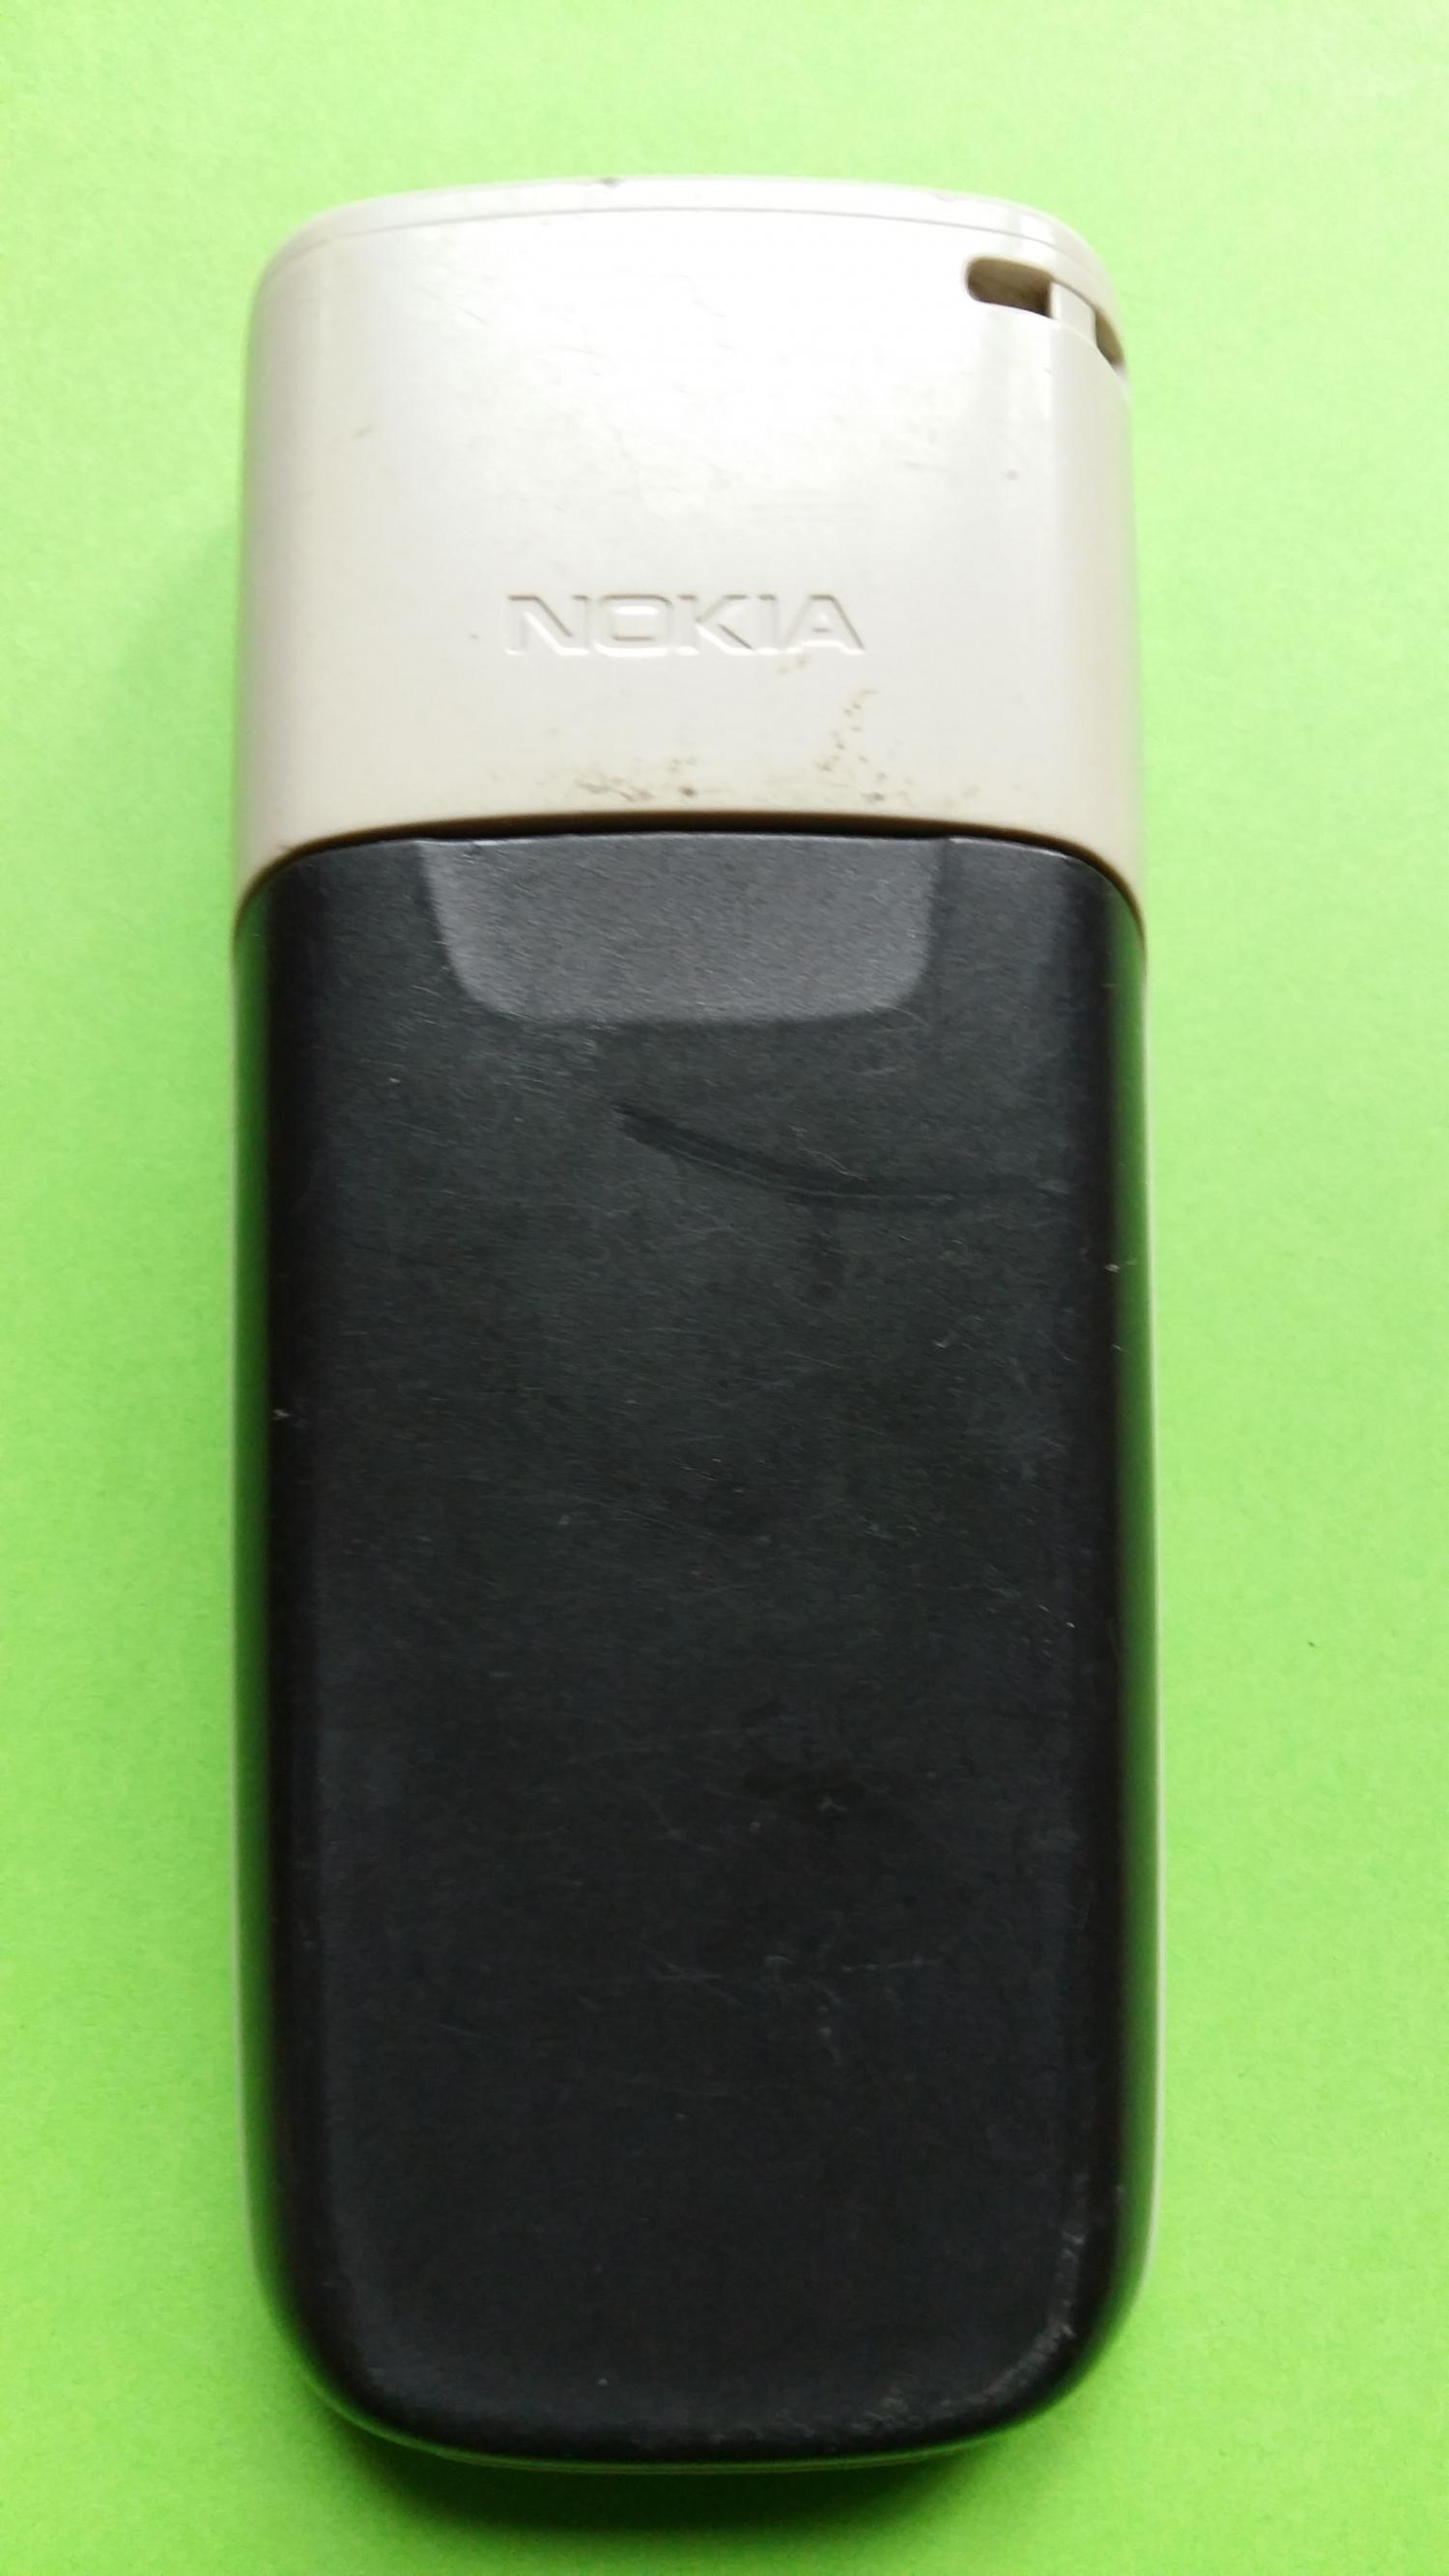 image-7300665-Nokia 1650 (3)2.jpg